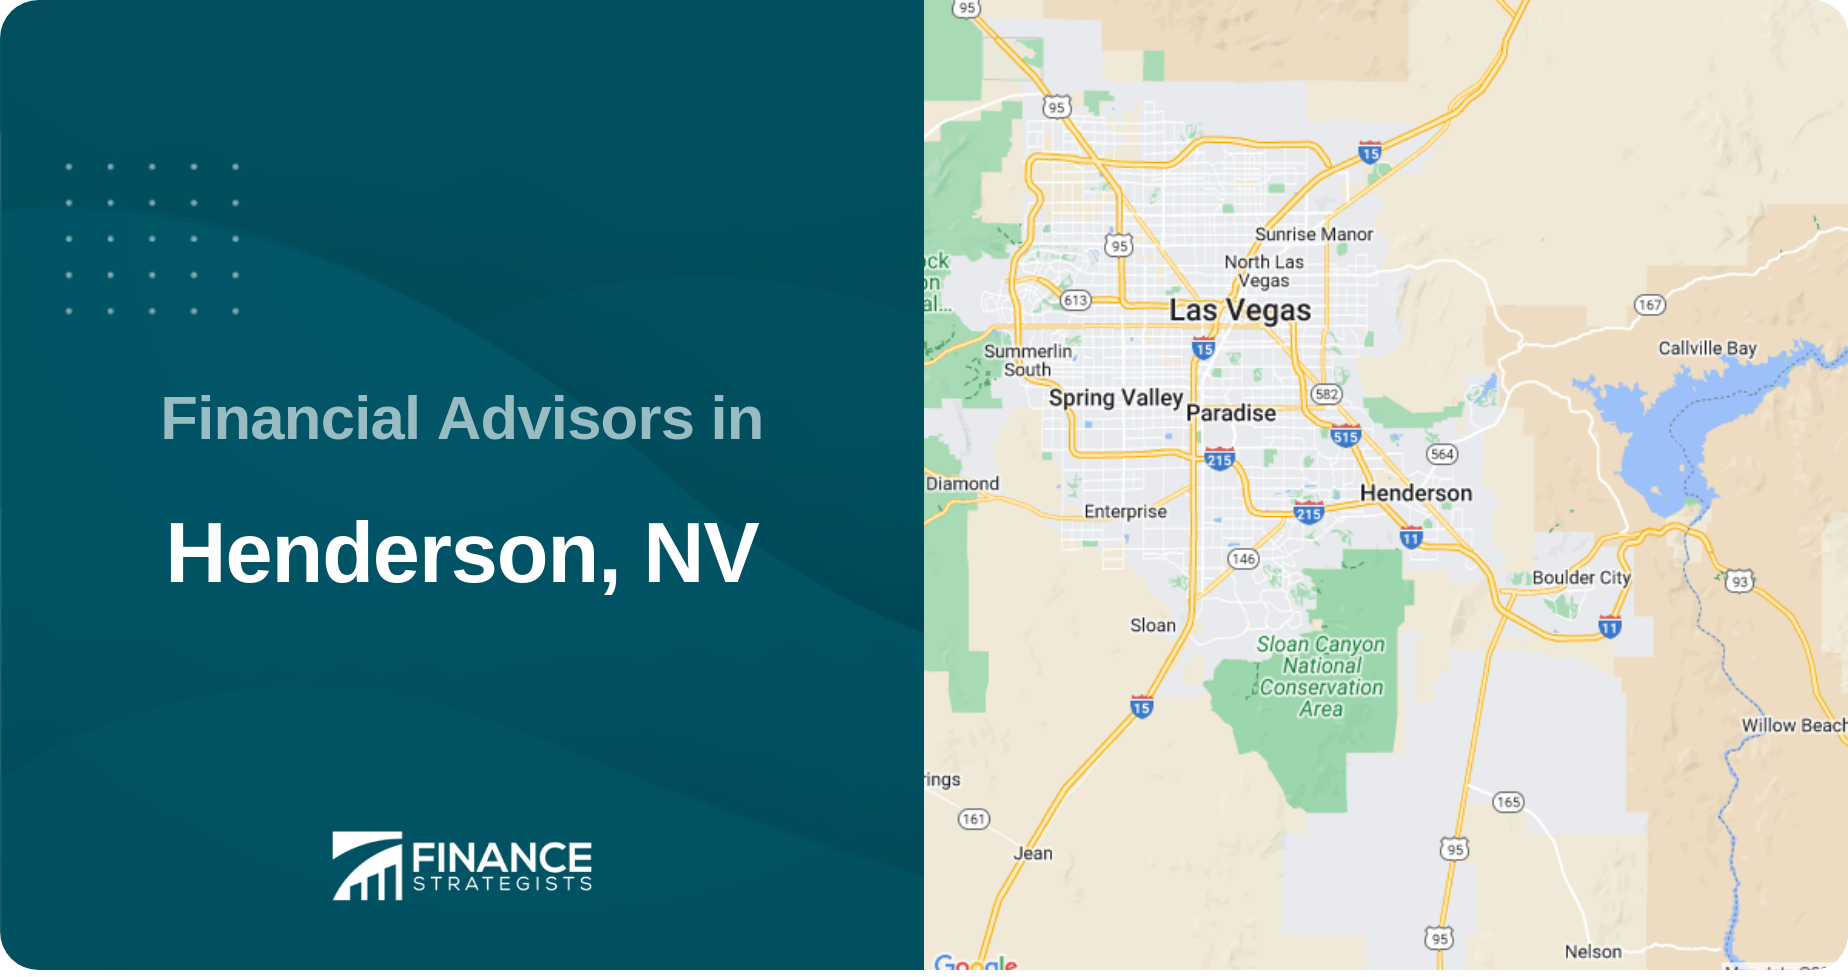 Financial Advisors in Henderson, NV